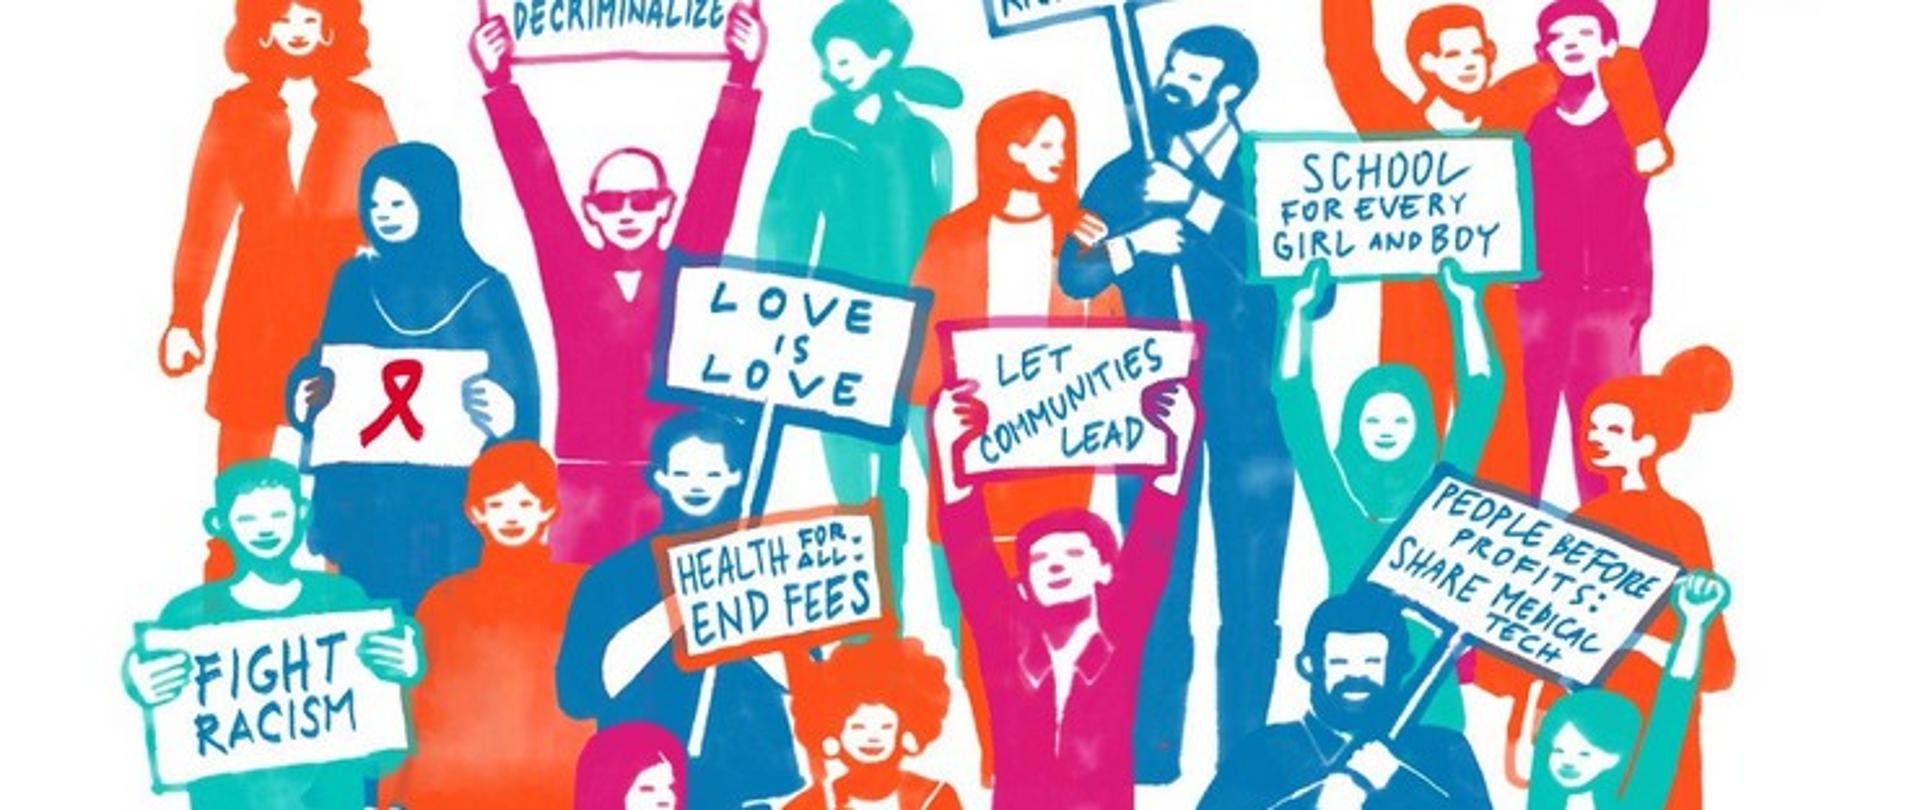 Plakat z różnokolorowymi rysunkami osób trzymających transparenty w języku angielskim: "FIGHT RACISM", "LOVE IS LOVE", "SCHOOL FOR EVERY GIRL AND BOY"... 